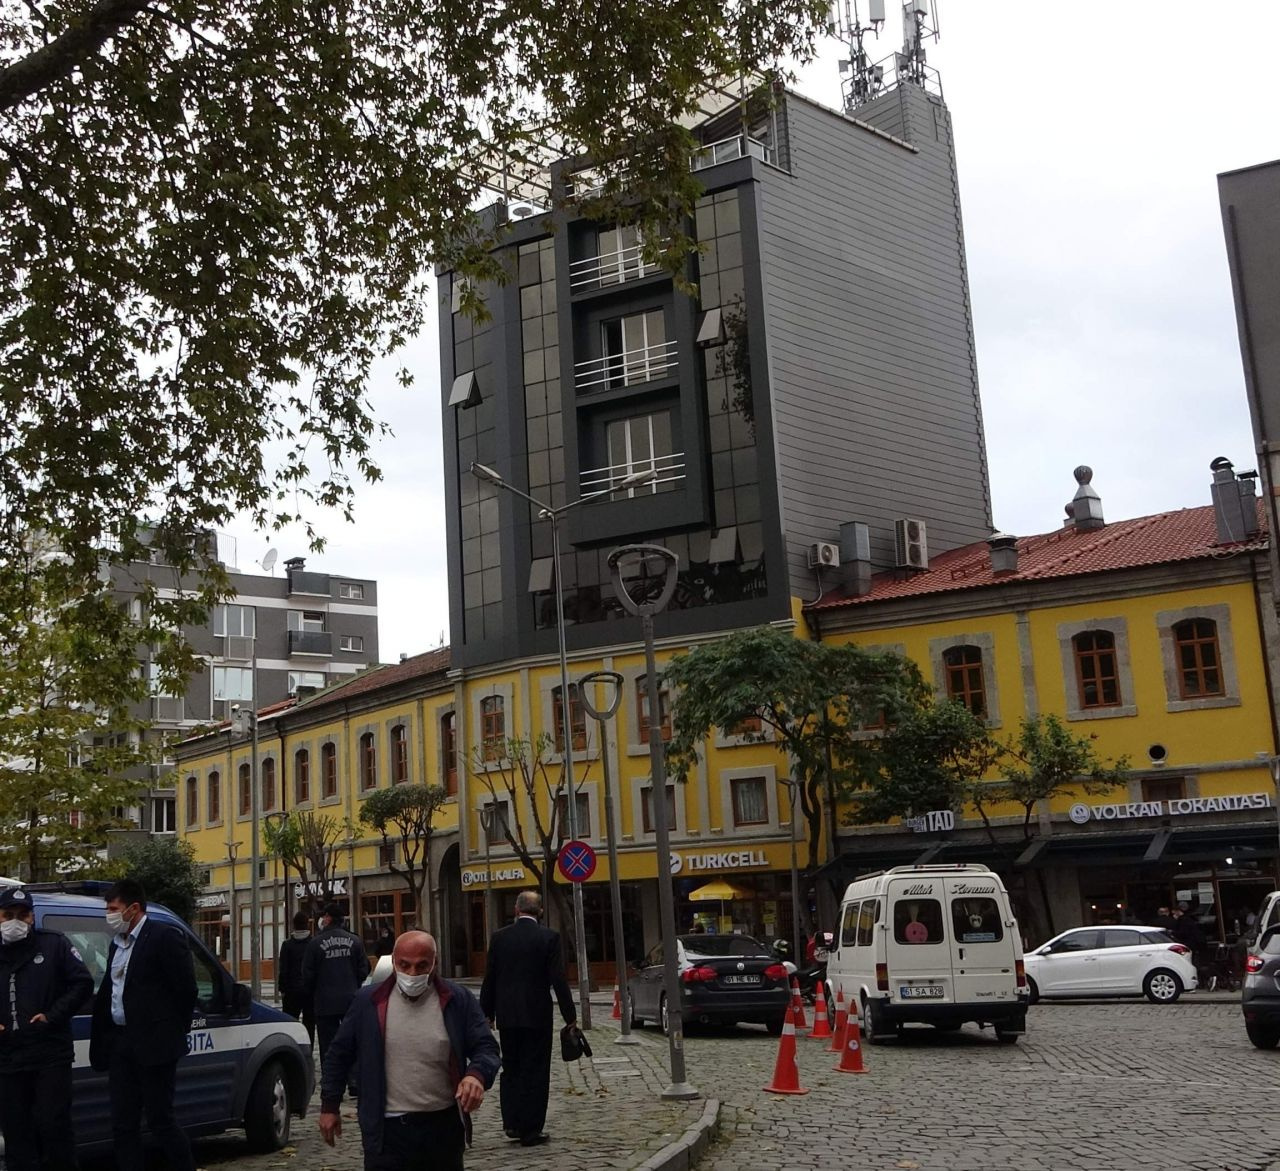 Kahramanmaraş'taki dünyanın en saçma binasına Trabzon'dan rakip çıktı